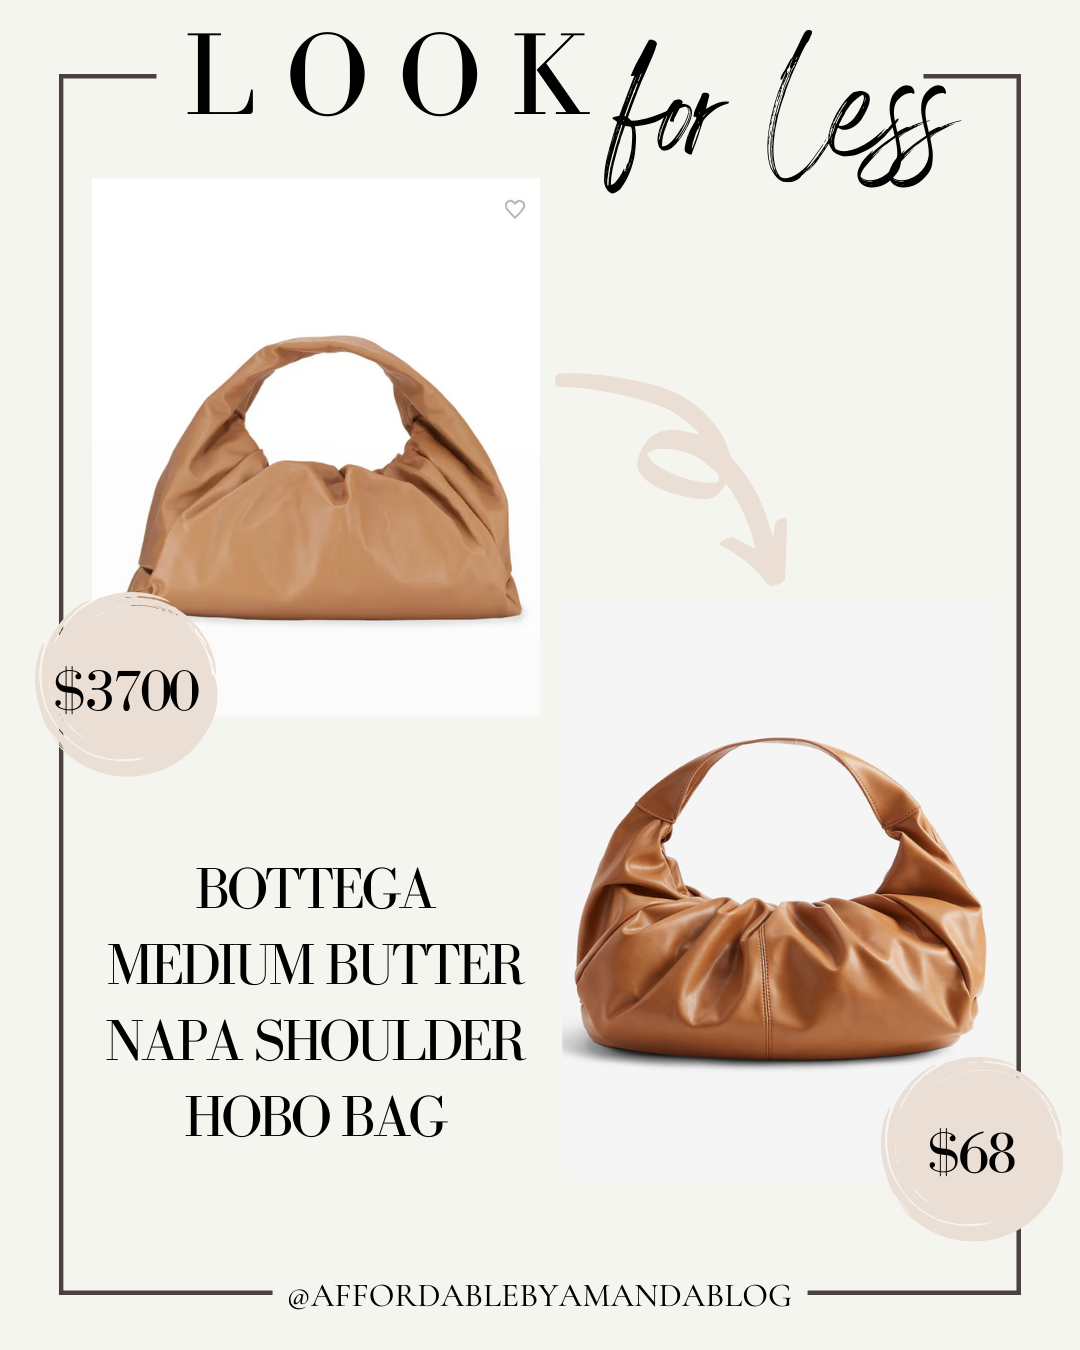 Look for Less - Designer Look for Less - Bottega Medium Butter Napa Shoulder Hobo Bag Get The Designer Look for Less. Designer Look for Less. Chanel Look for Less. Bottega Veneta Look For Less. Affordable by Amanda.